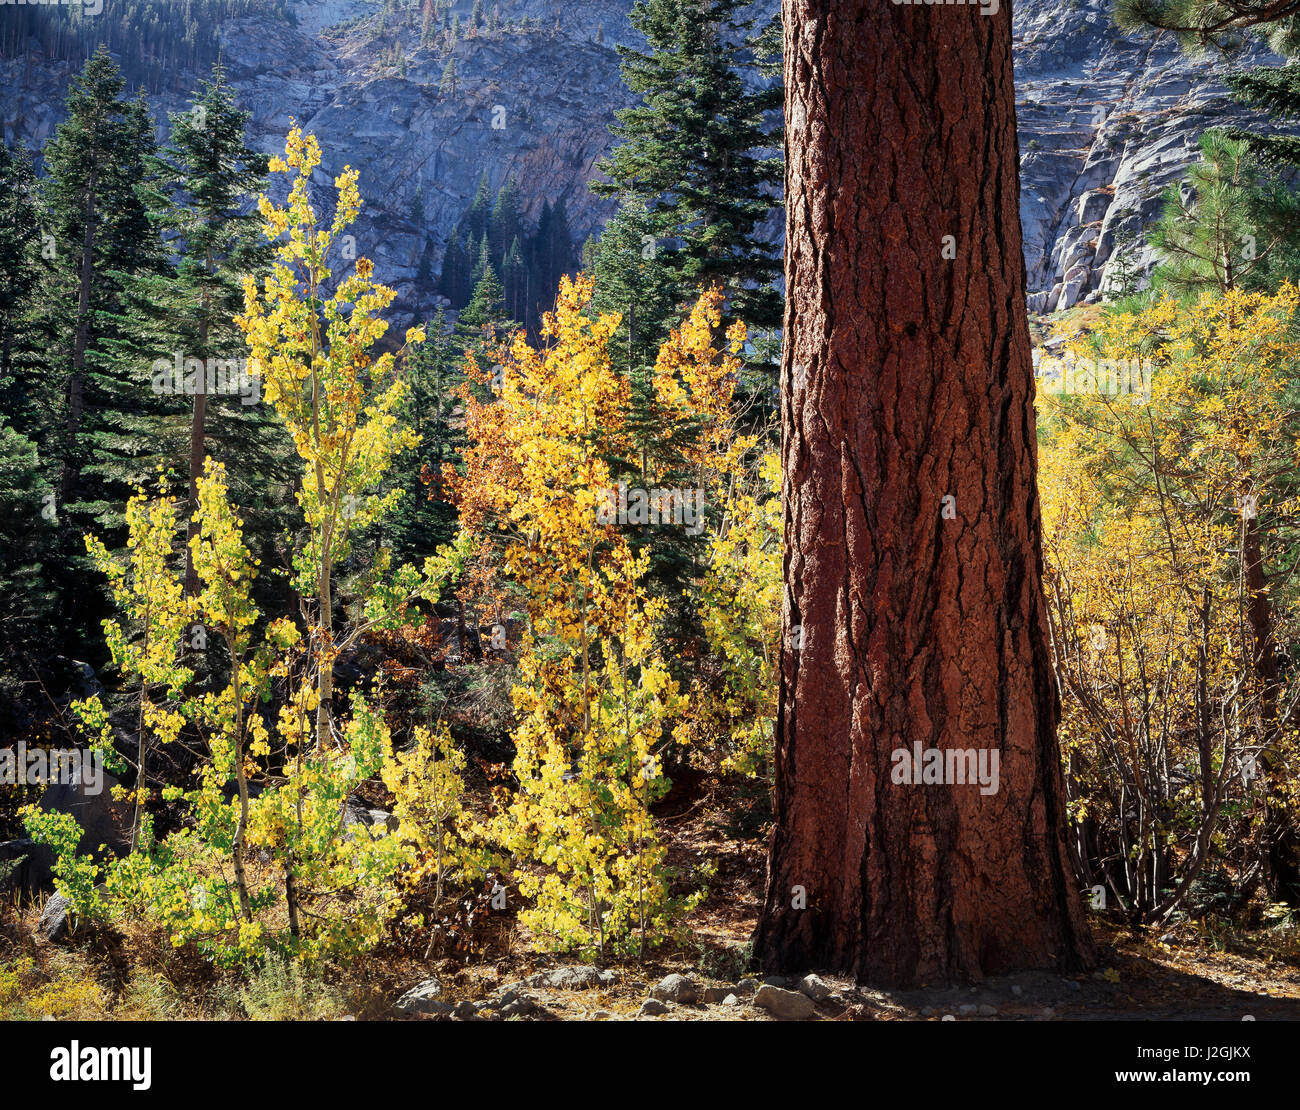 États-unis, Californie, la Sierra Nevada, couleurs de l'automne de trembles (Populus tremuloides) et un tronc d'arbre de pin ponderosa (Pinus ponderosa) dans la forêt. Tailles disponibles (grand format) Banque D'Images